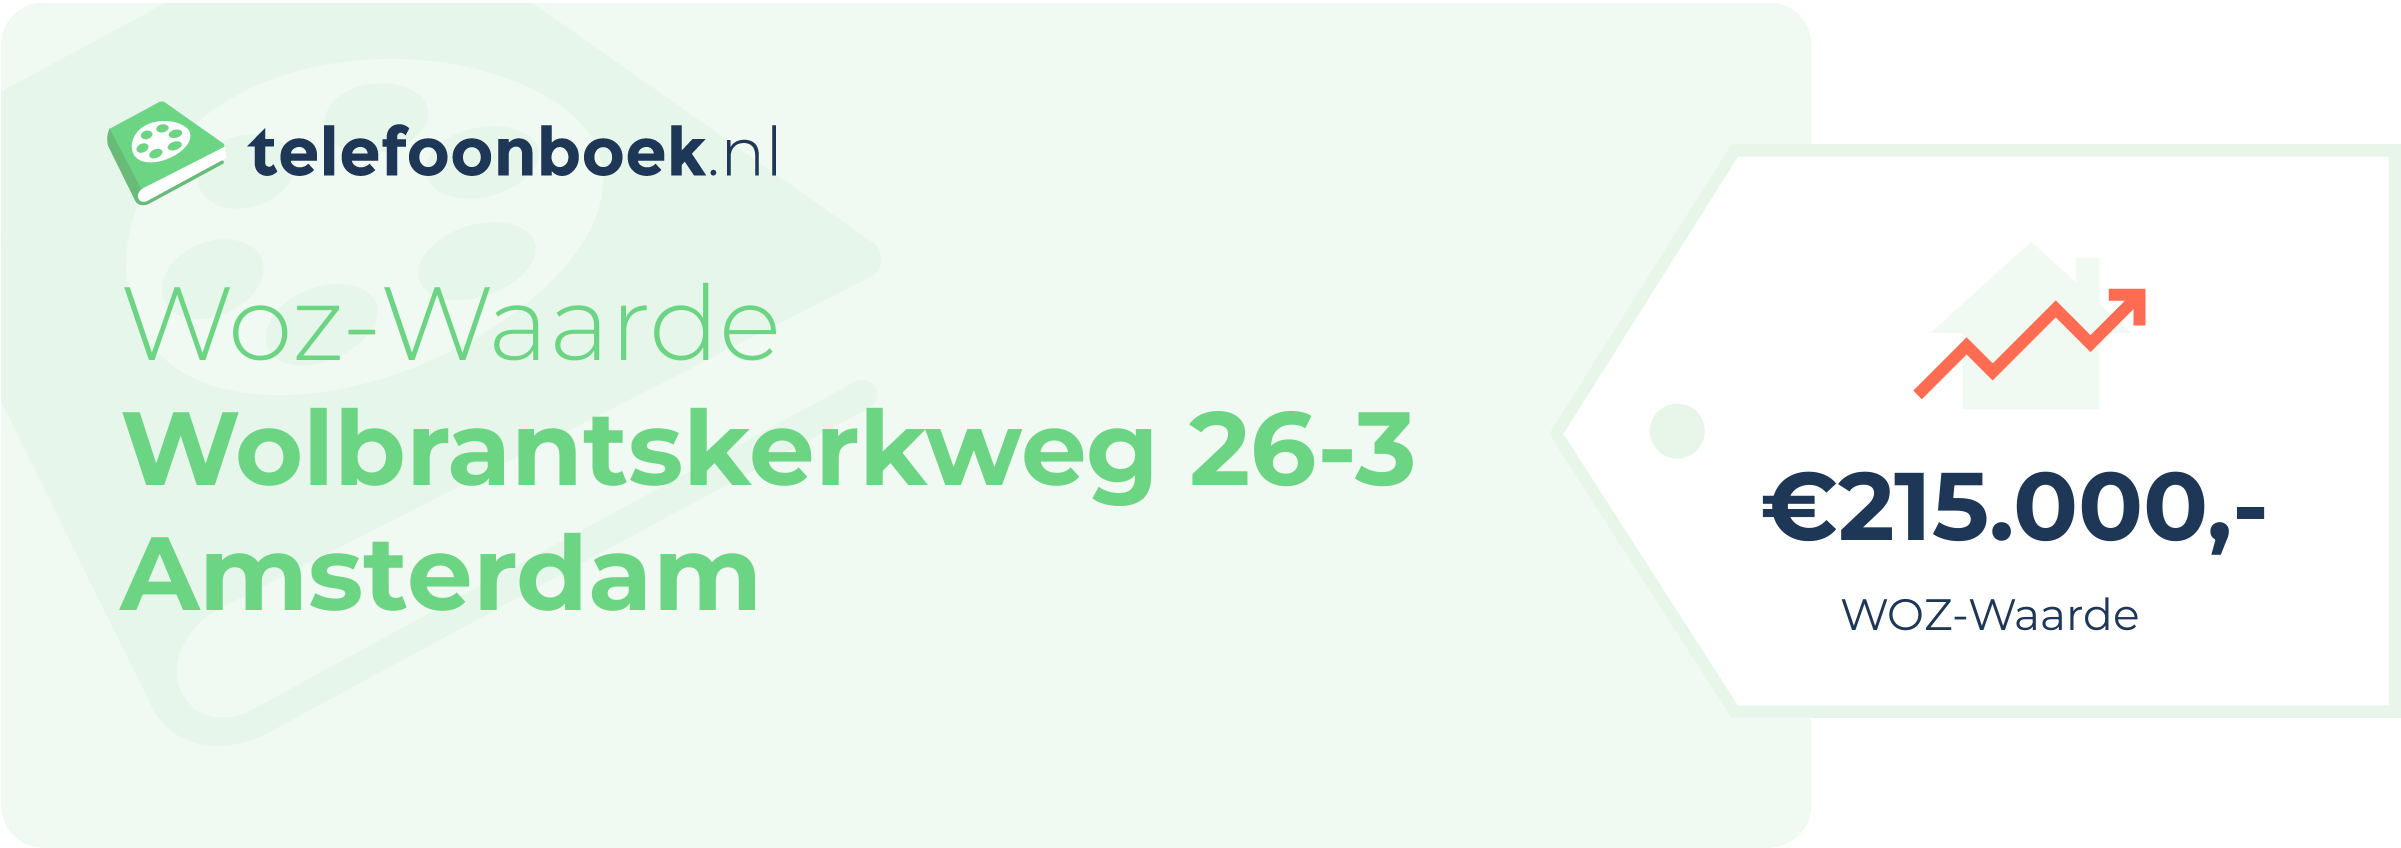 WOZ-waarde Wolbrantskerkweg 26-3 Amsterdam